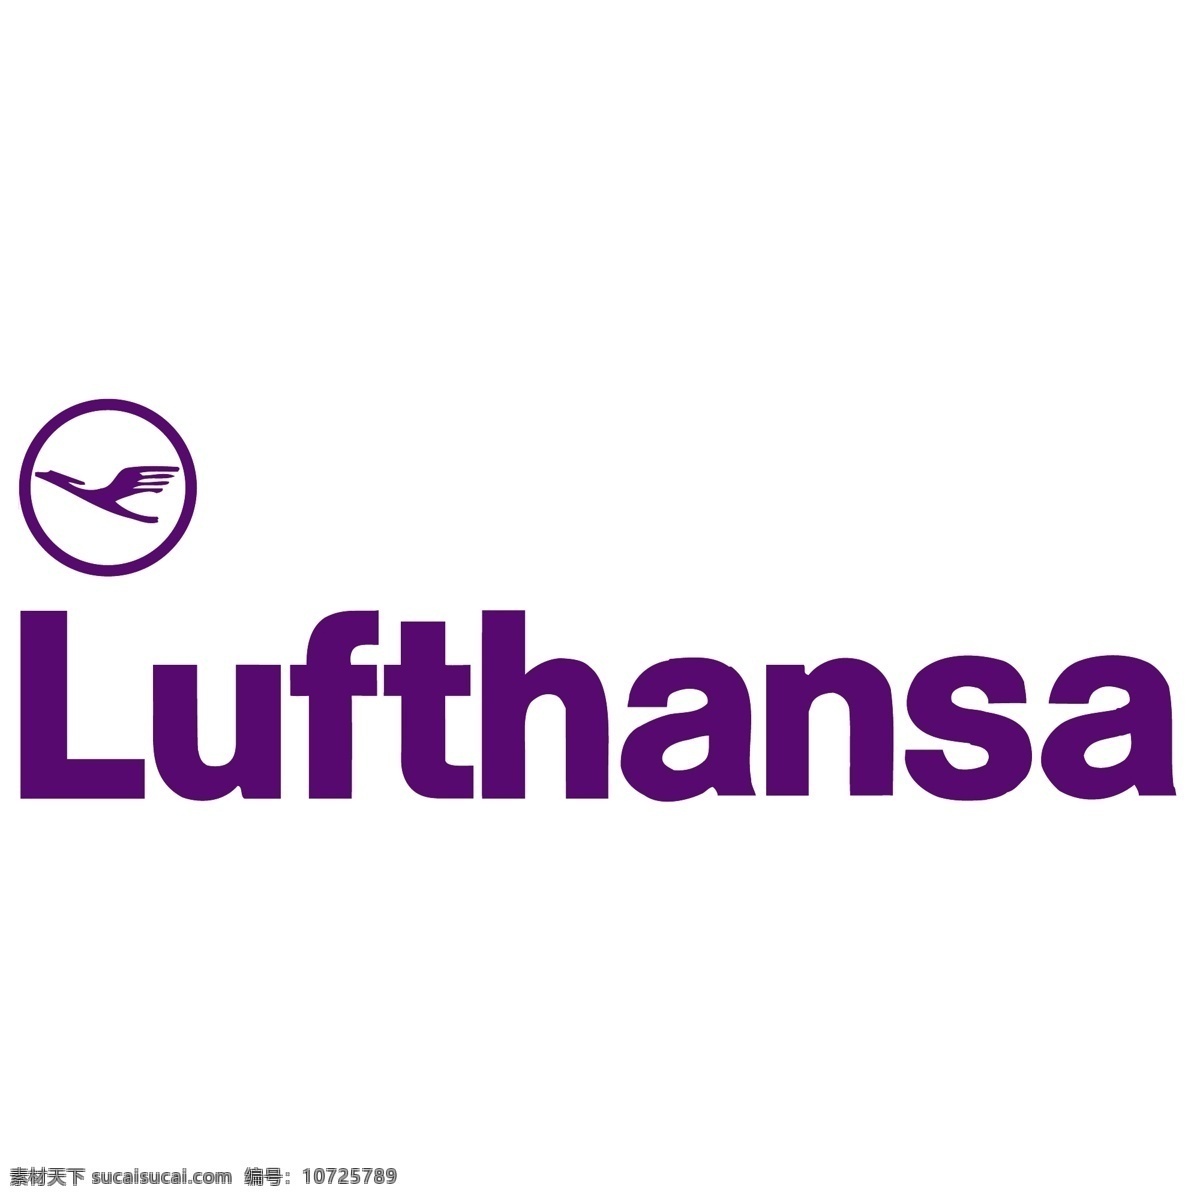 德国汉莎航空公司 免费 标志 标识 psd源文件 logo设计